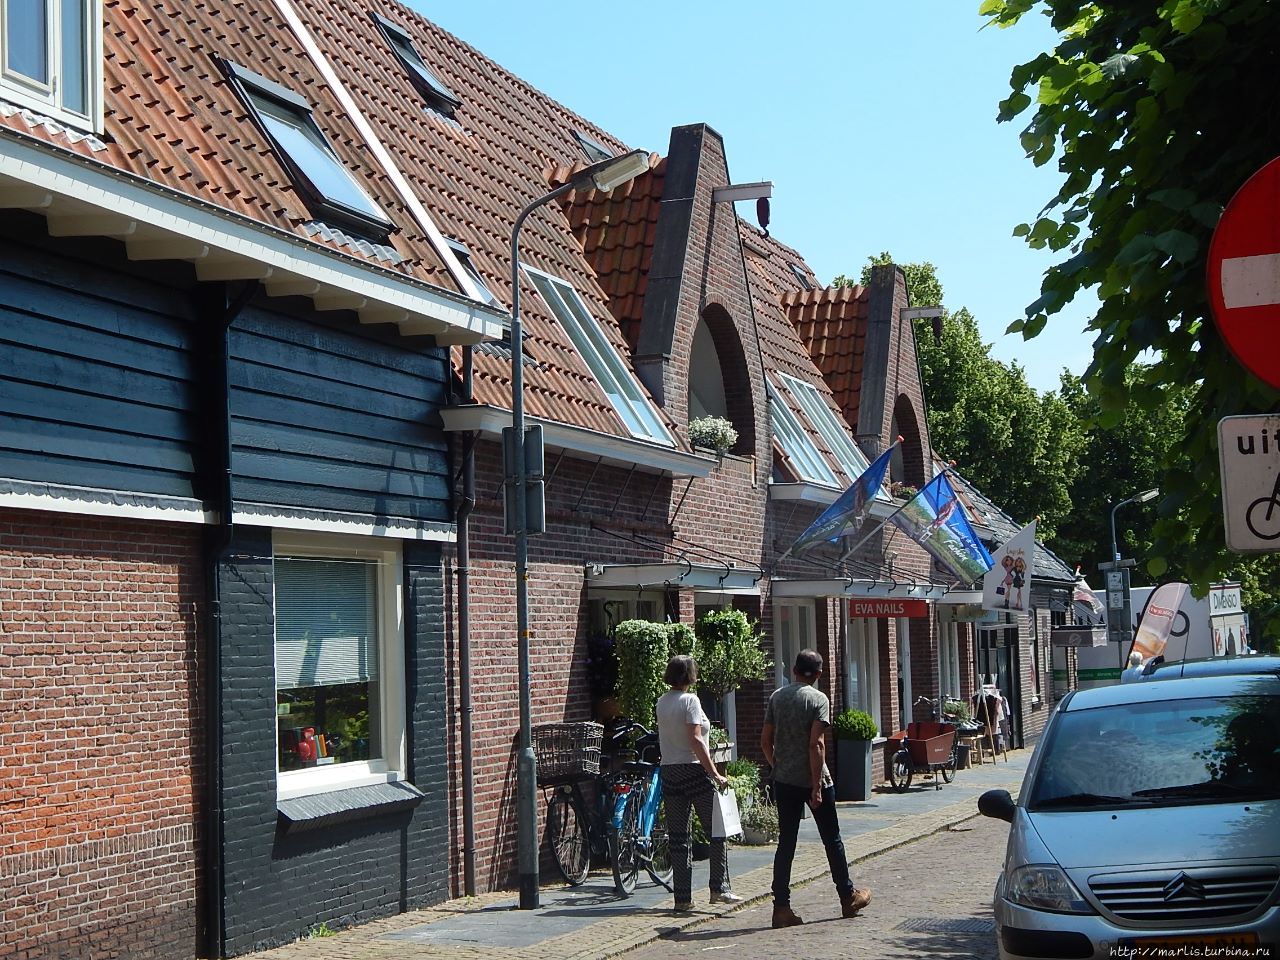 Город в дюнах, вдохновлявший голландских экспрессионистов Берген (Голландия), Нидерланды